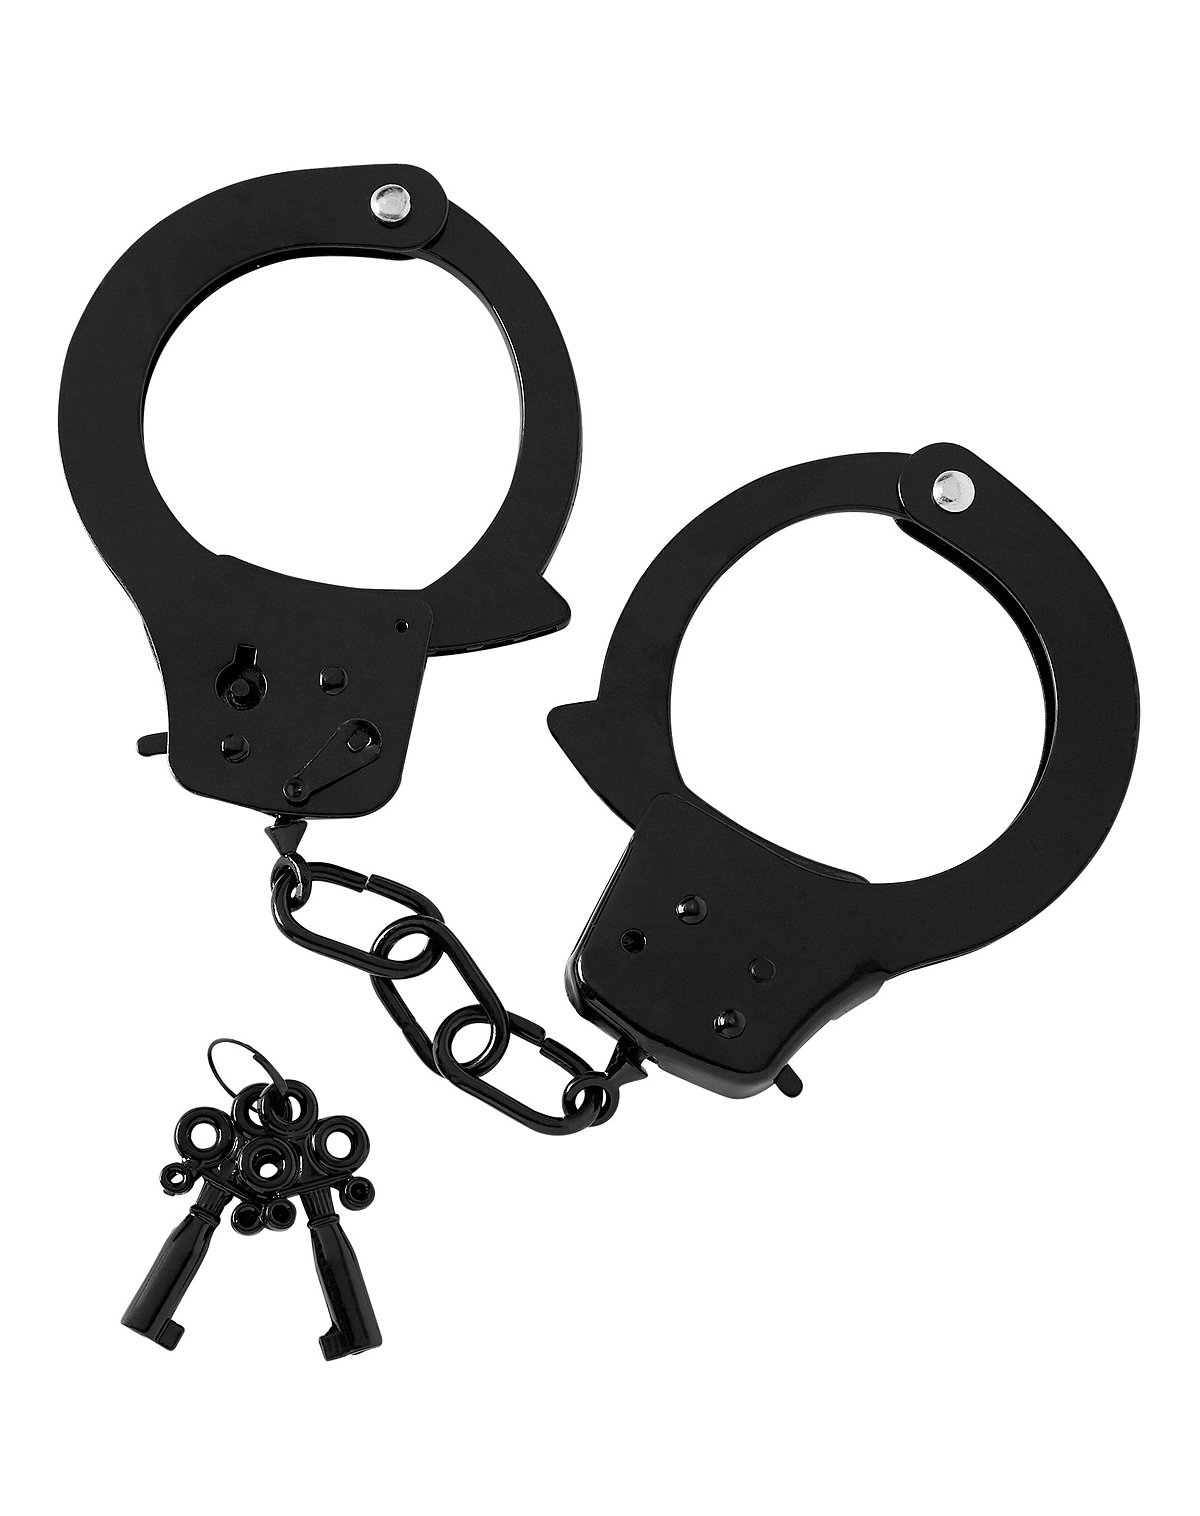 Designer Handcuffs - Pleasure Bound
